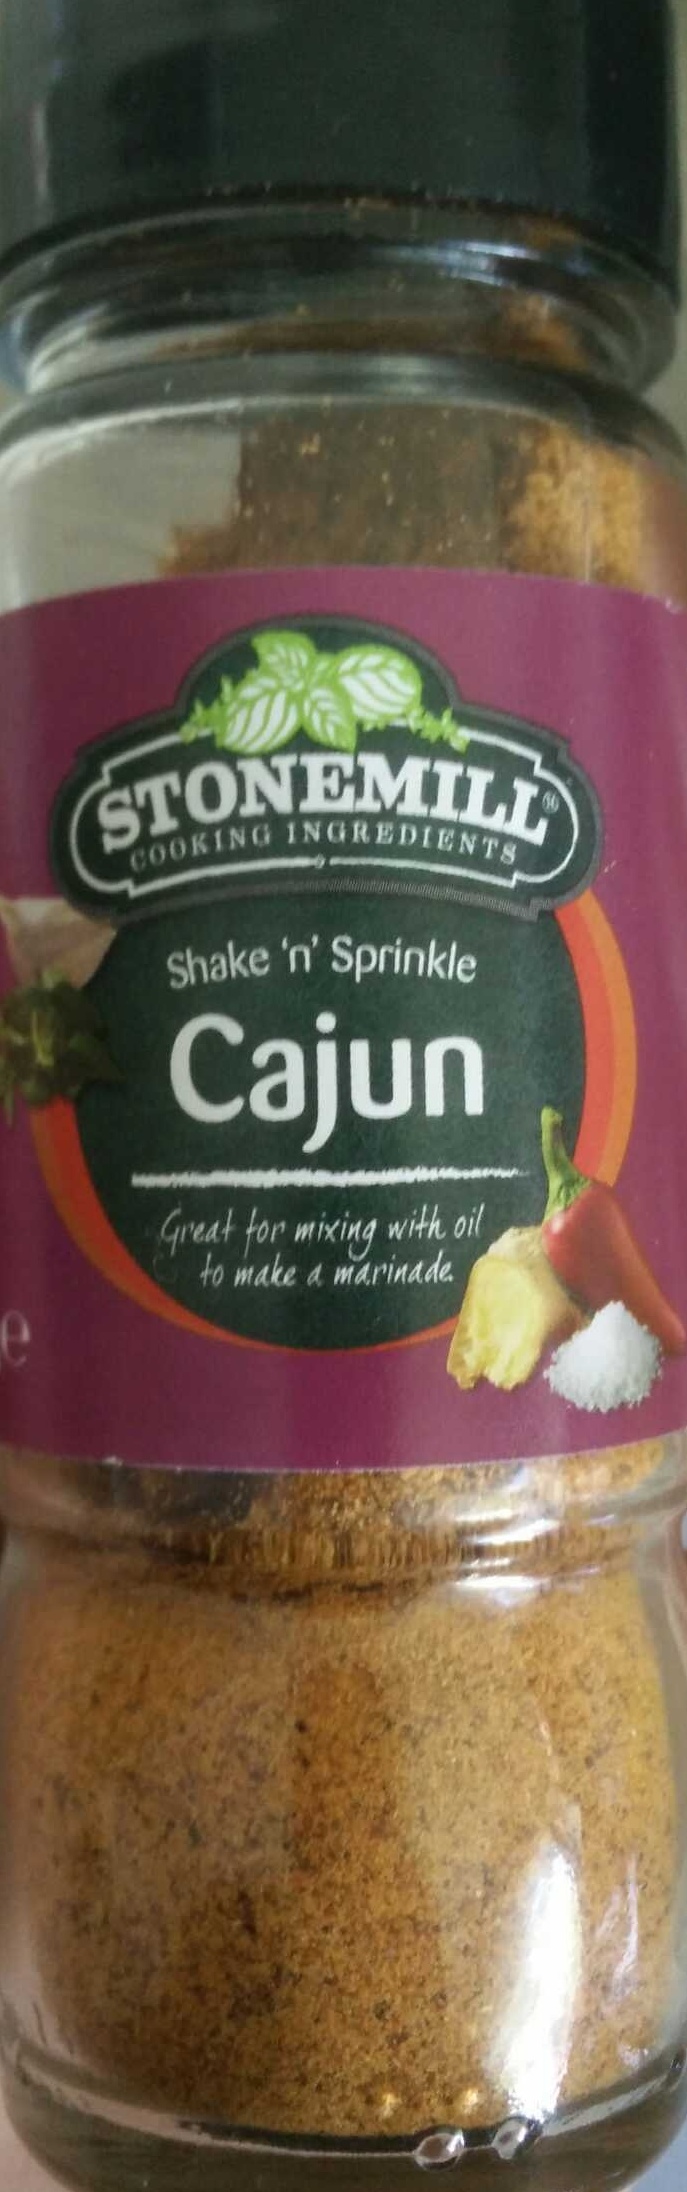 Shake 'n' Sprinkle: Cajun - Product